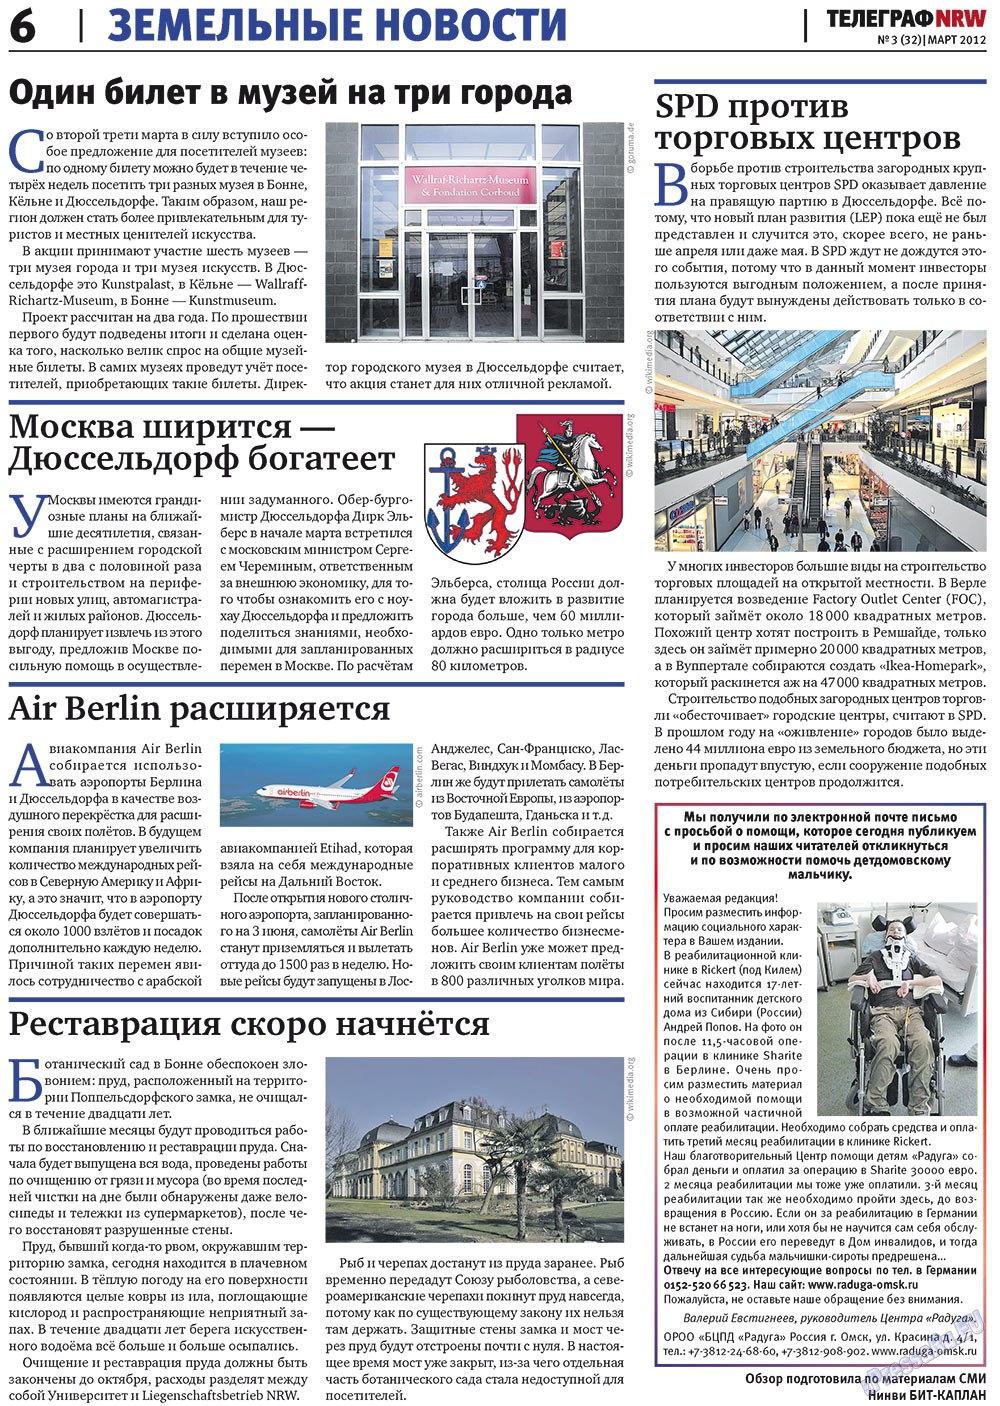 Телеграф NRW (газета). 2012 год, номер 3, стр. 6